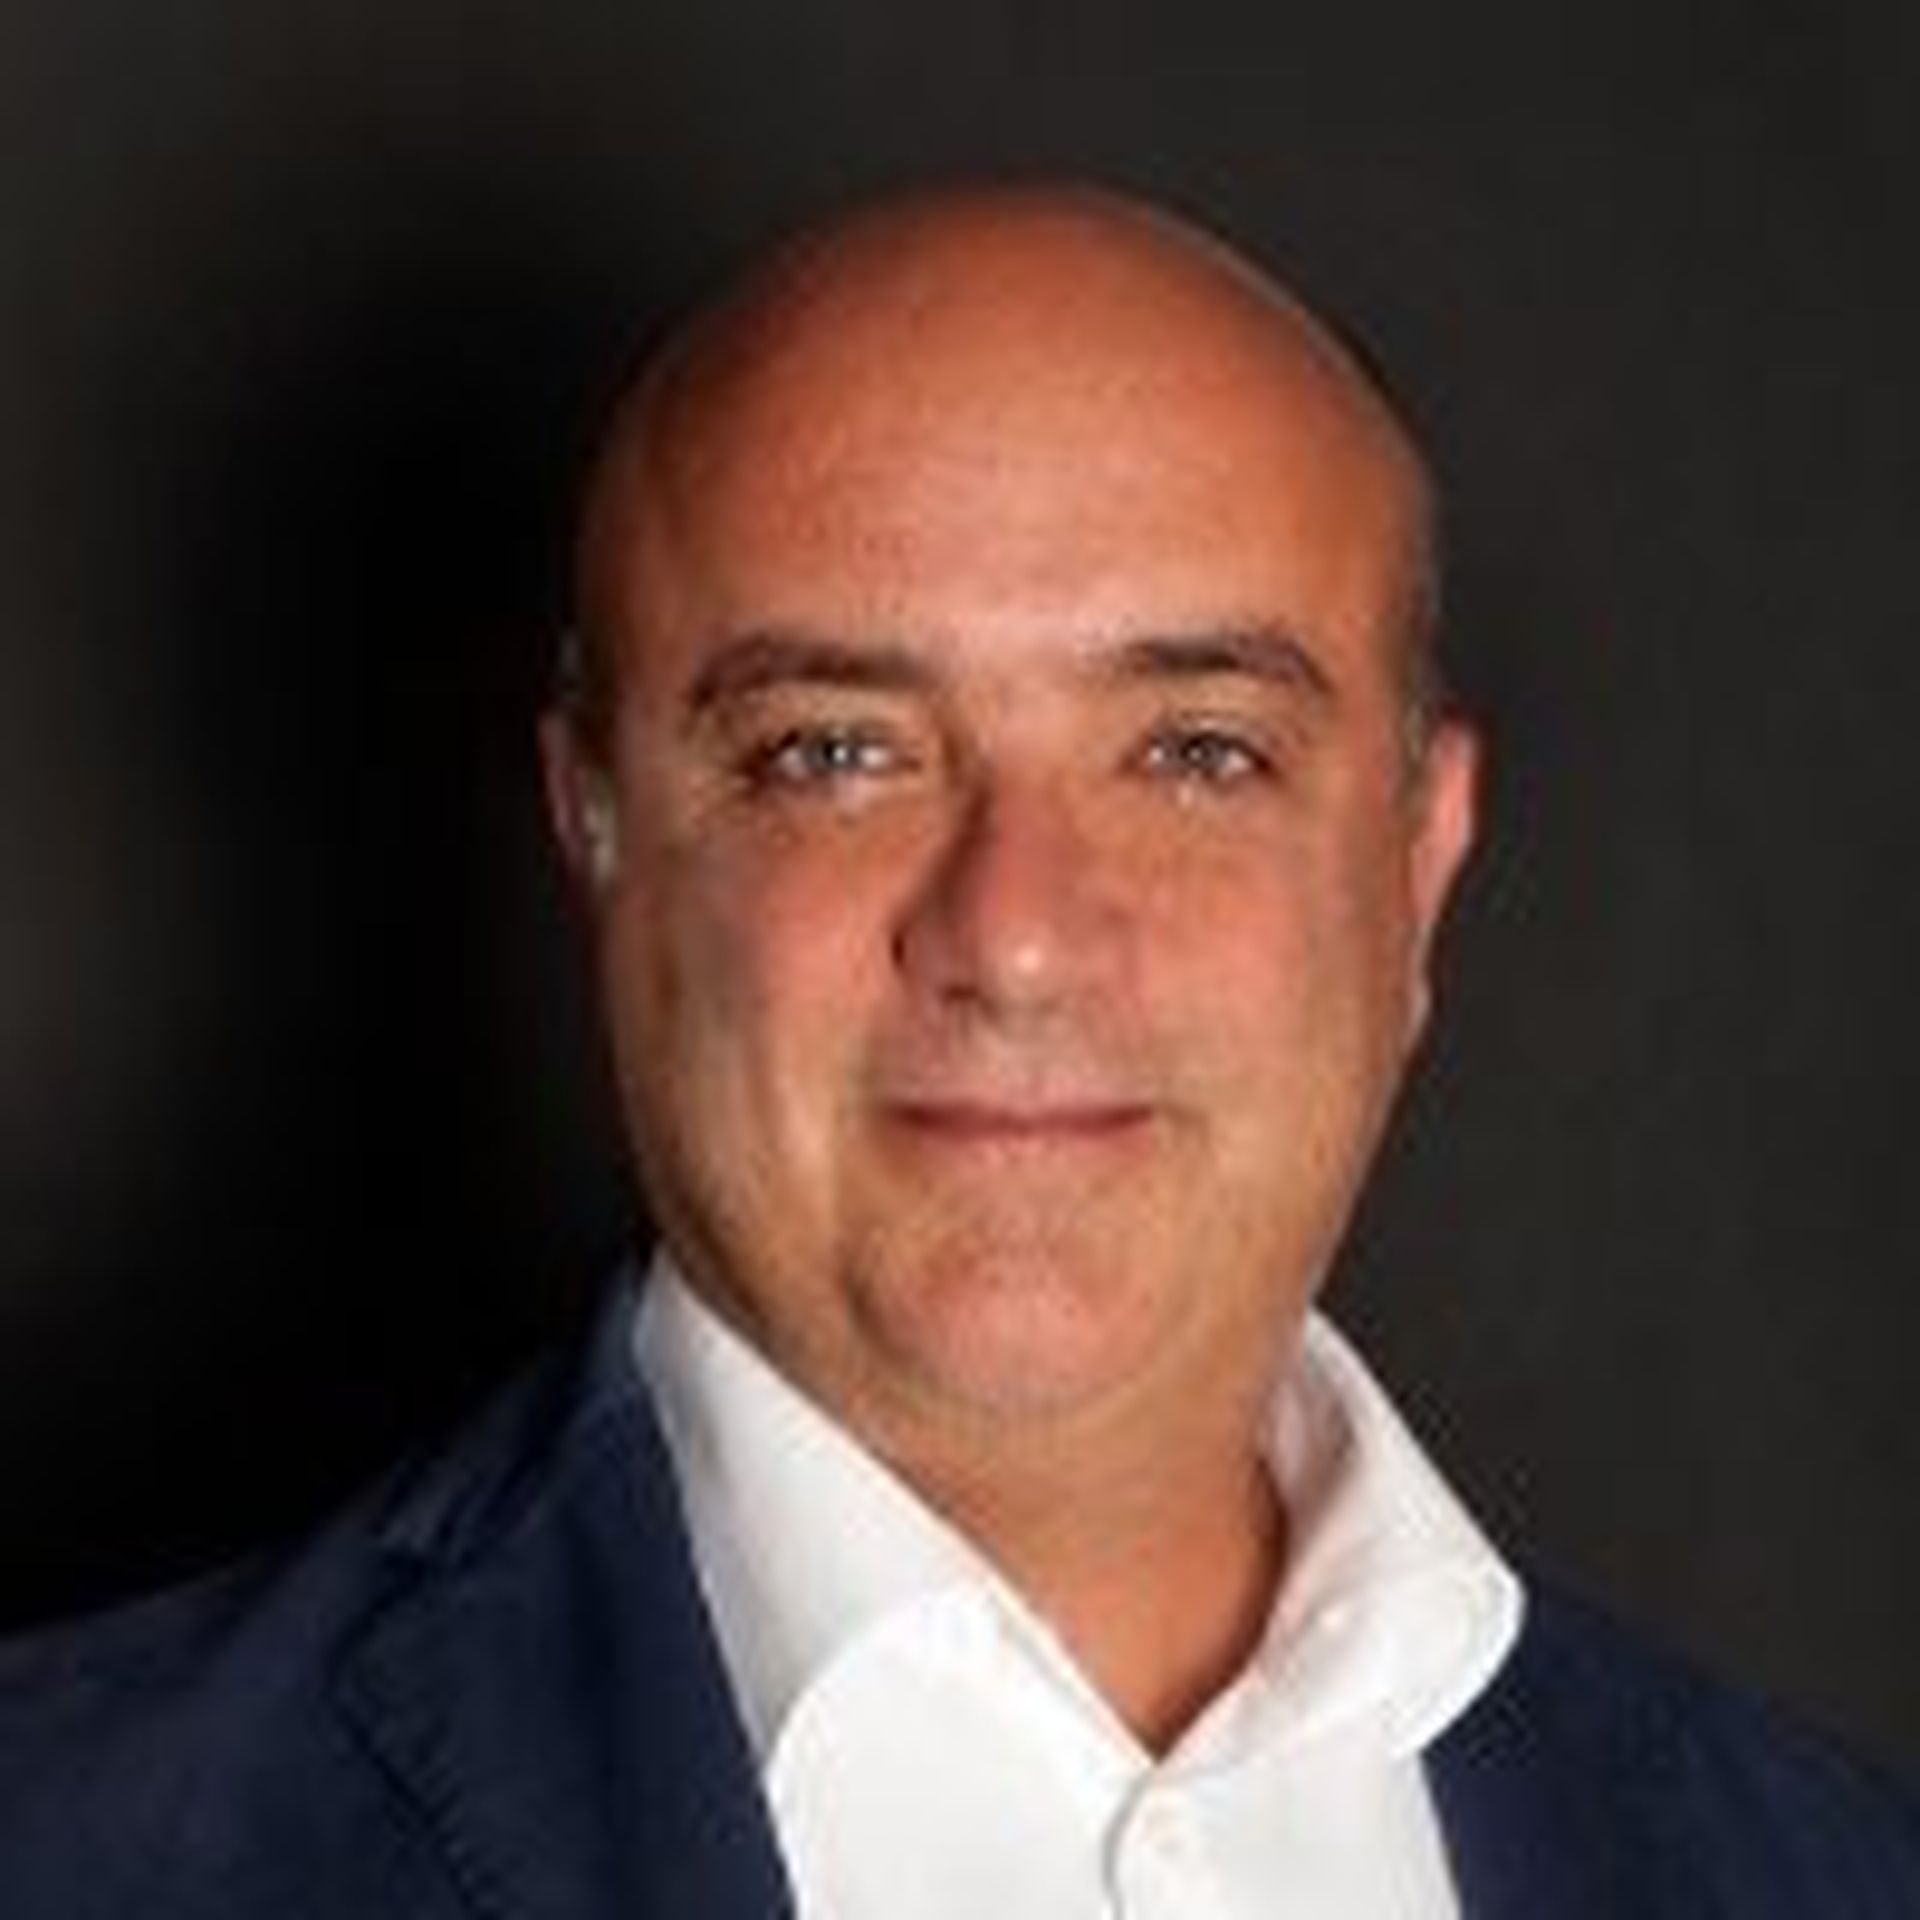 DFLabs CEO Dario Forte